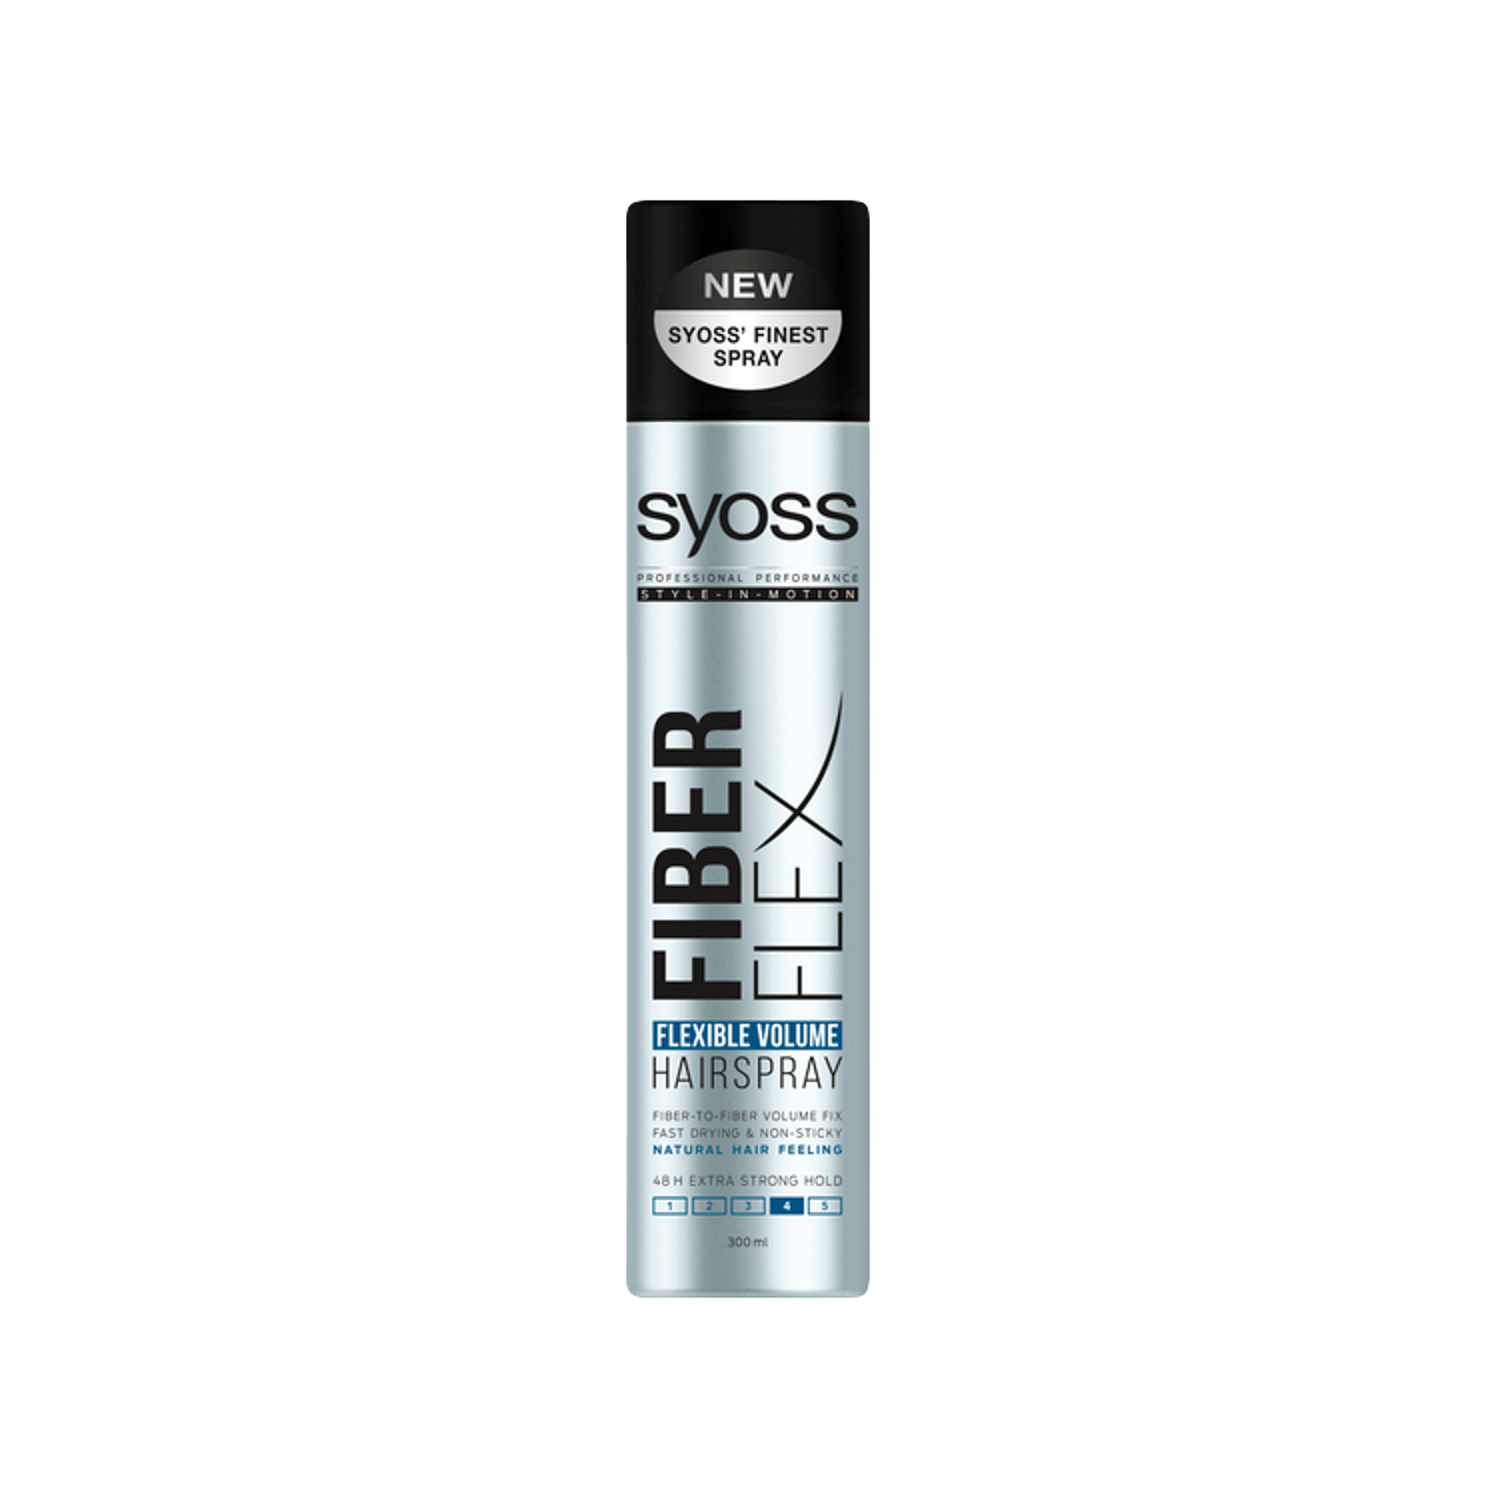 Лак для волос экстрасильного объема Syoss Fiberflex, 300 мл лак для волос syoss ultra flex упругий объем 400мл